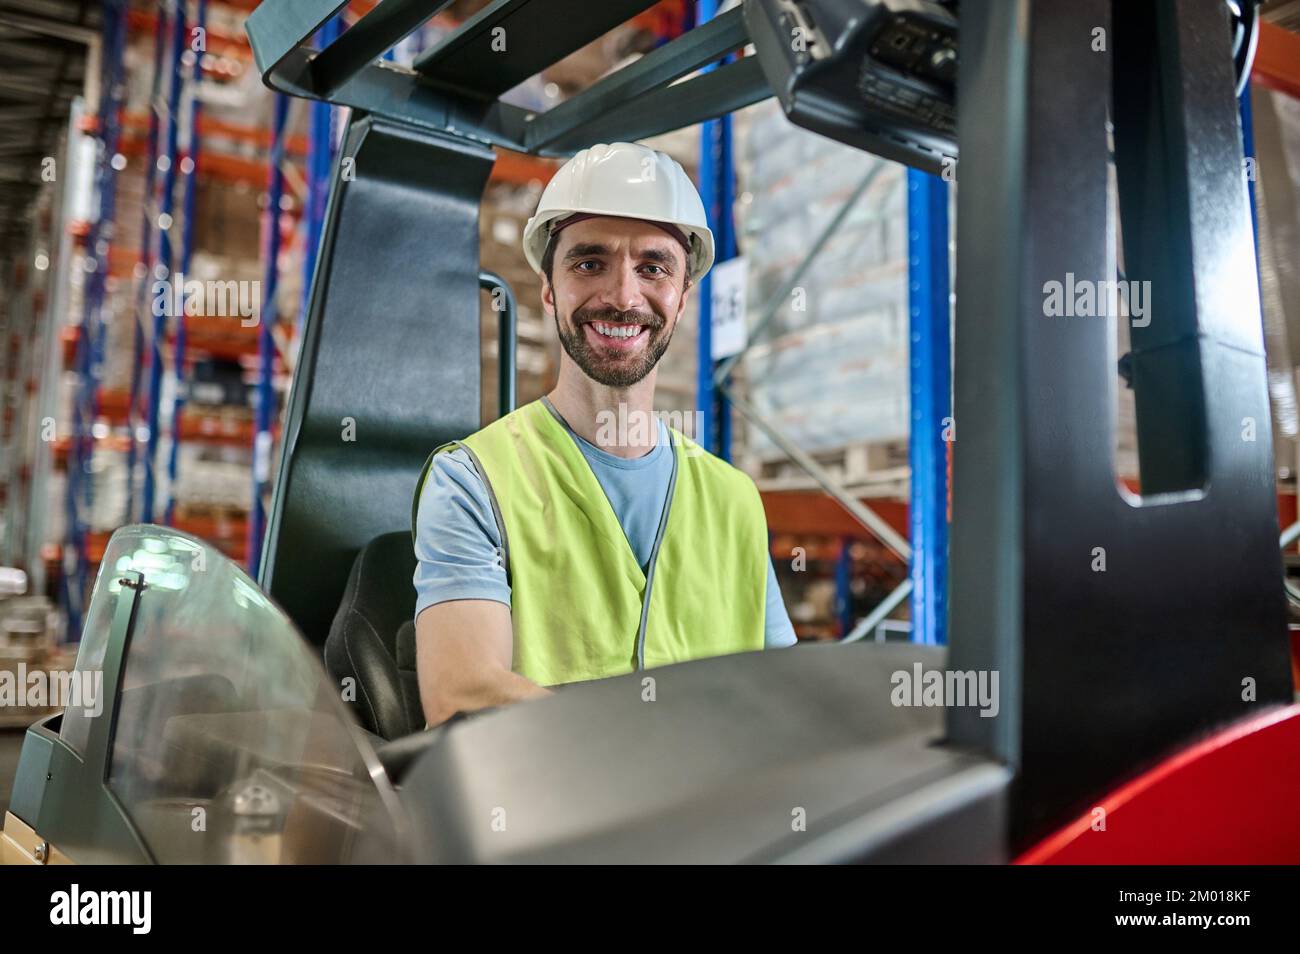 Sonriendo alegre trabajador de almacén en un casco y chaleco reflectante sentado en la carretilla elevadora eléctrica. Foto de stock